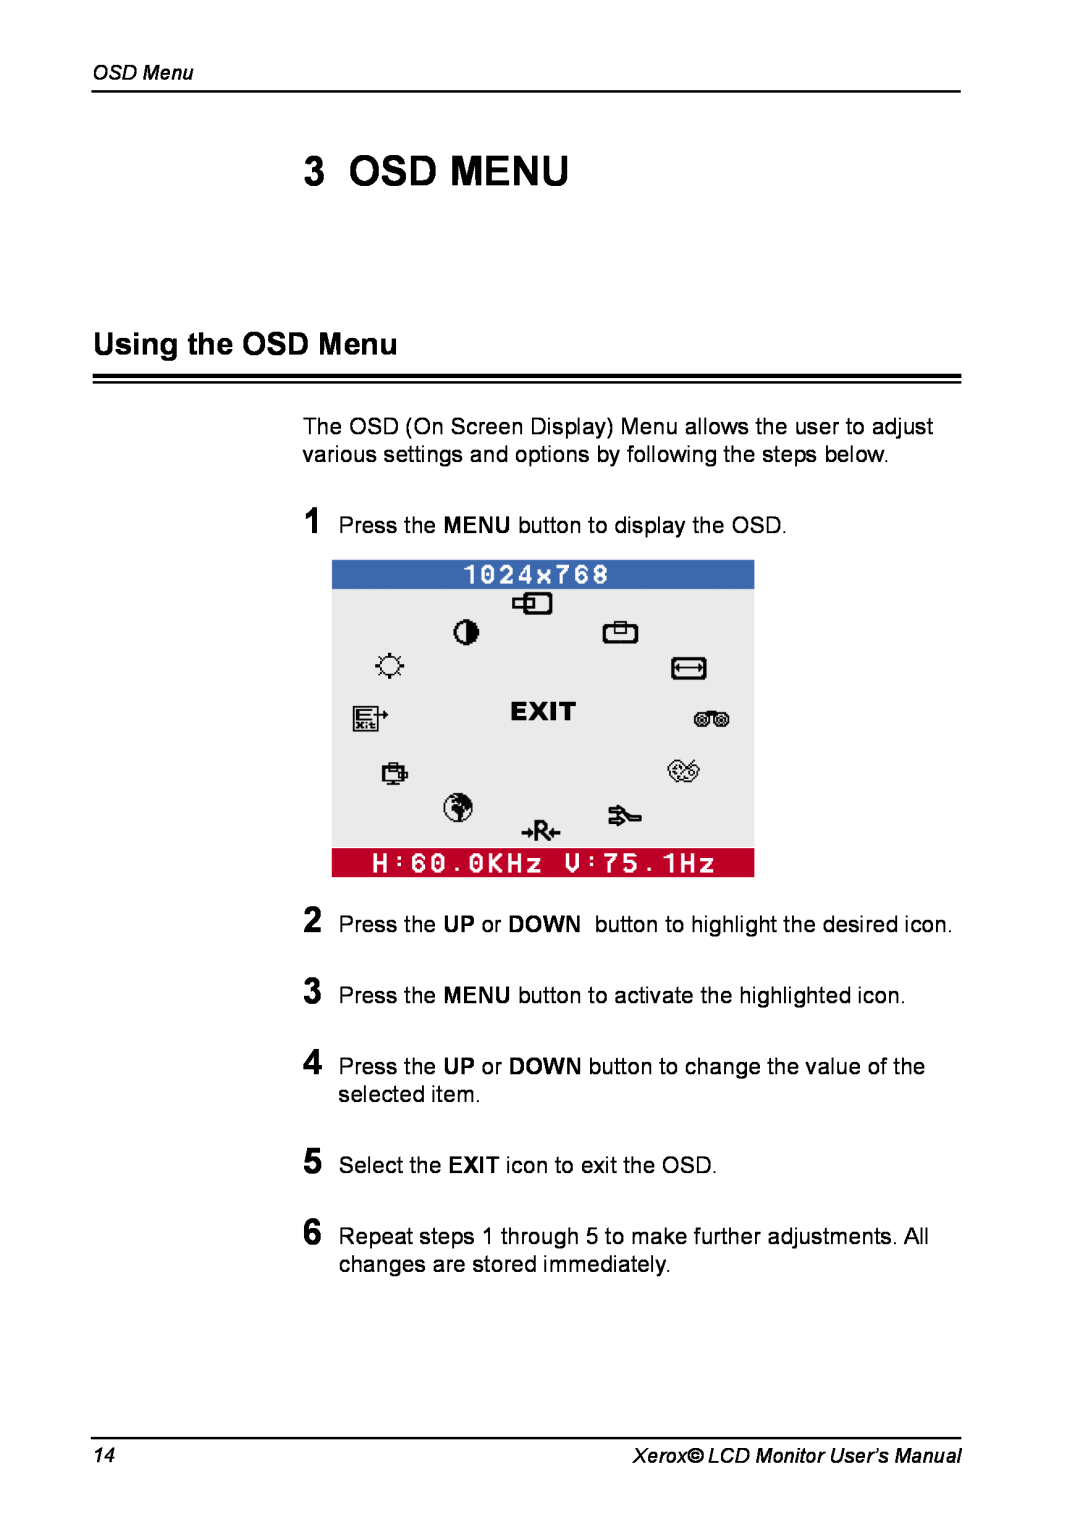 Xerox XA7-19i manual Osd Menu, Using the OSD Menu, Exit 